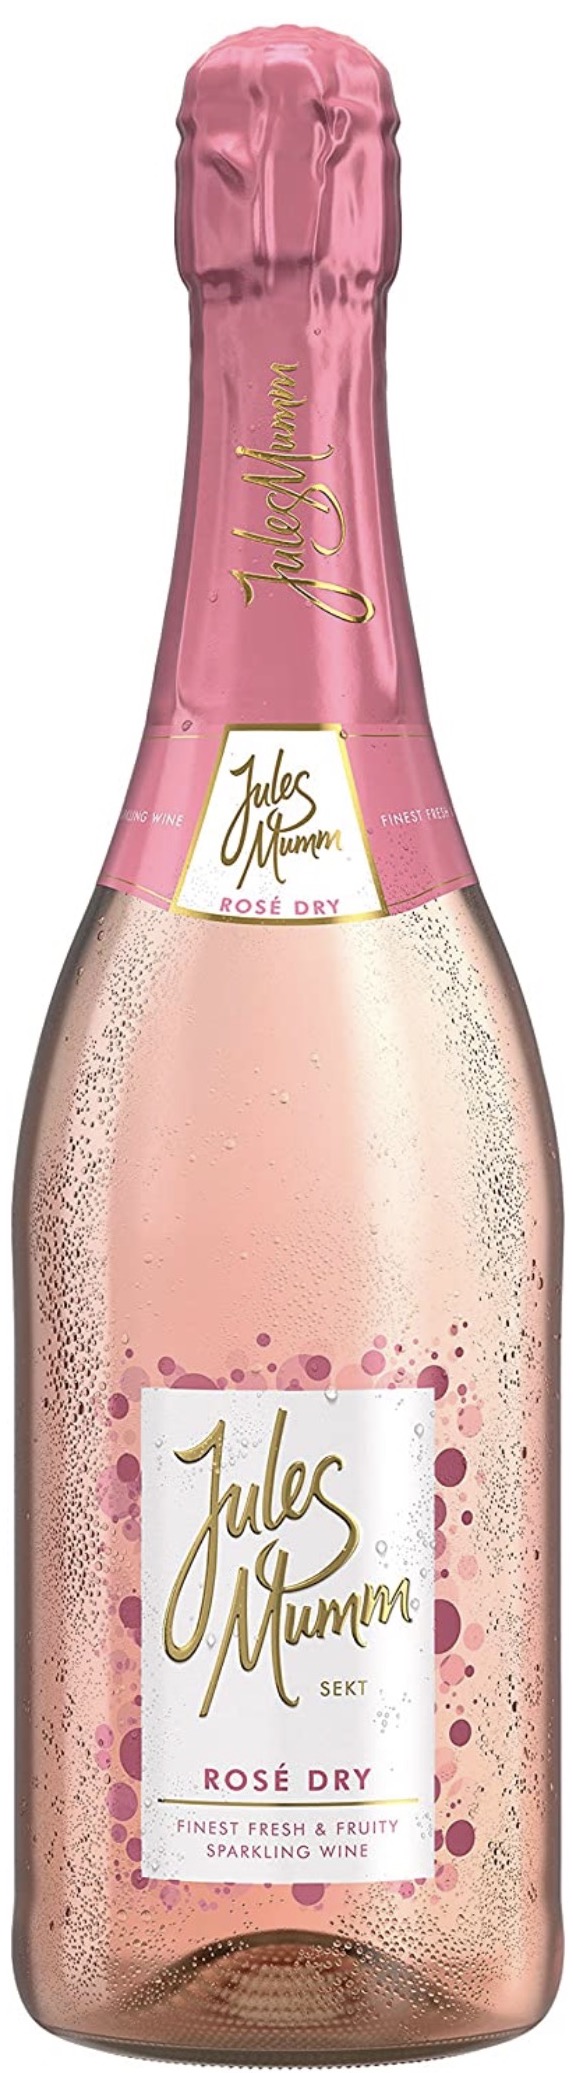 Jules Mumm Rose Dry Sekt 11% vol. 0,75L